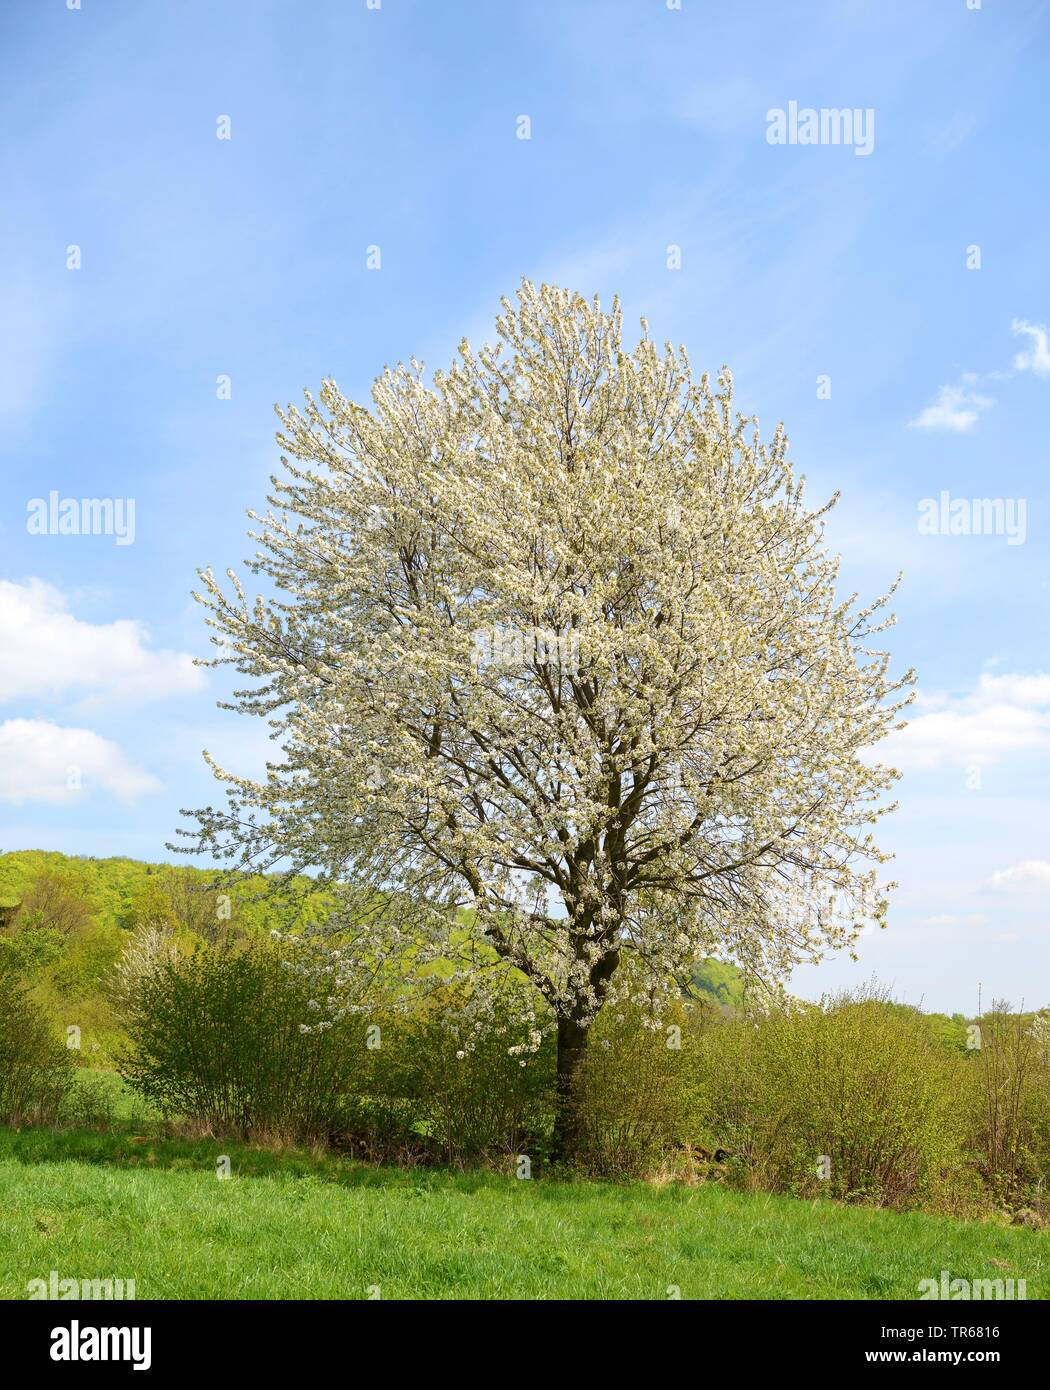 Cherry Tree, le cerisier (Prunus avium), blooming cherry tree dans une haie, de l'Allemagne, la Bavière Banque D'Images